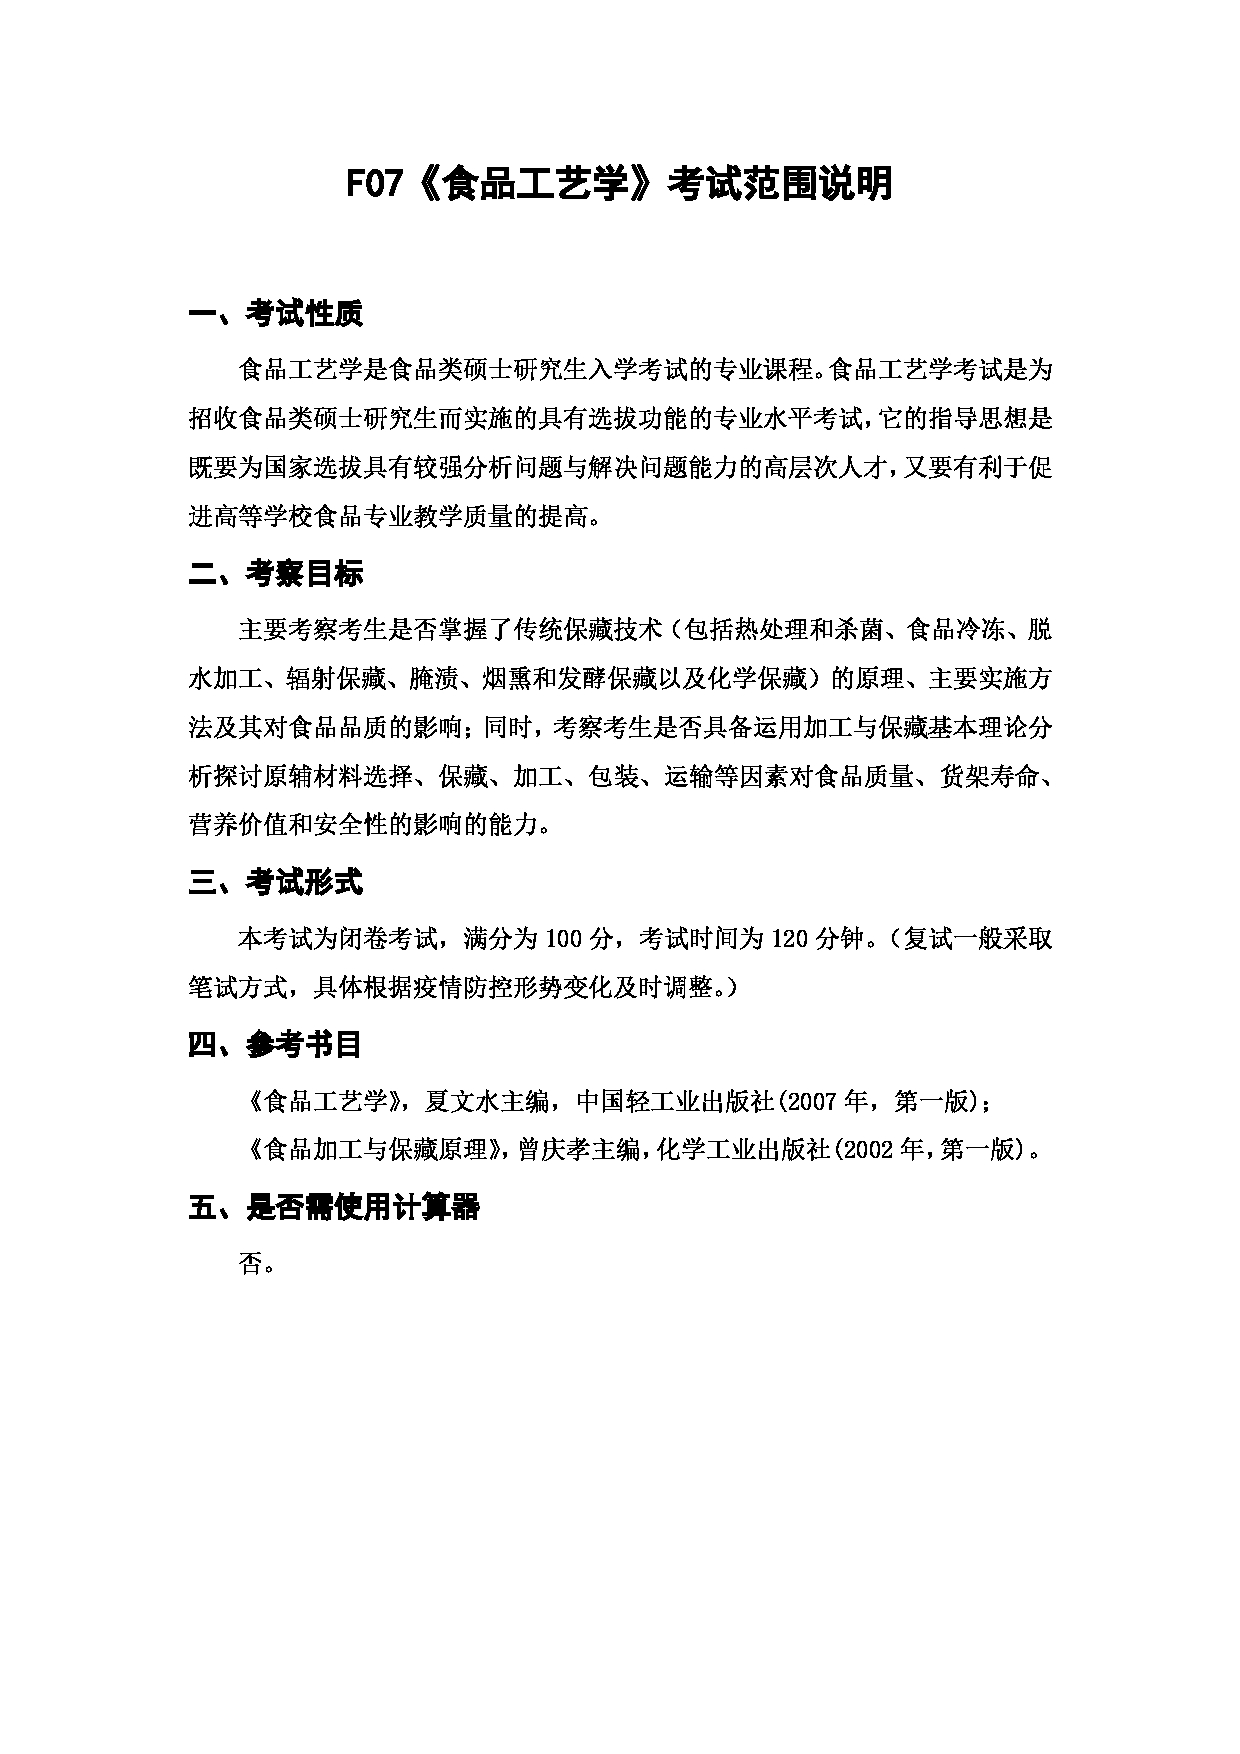 上海海洋大学2023年考研自命题科目 F07《食品工艺学》 考试范围第1页